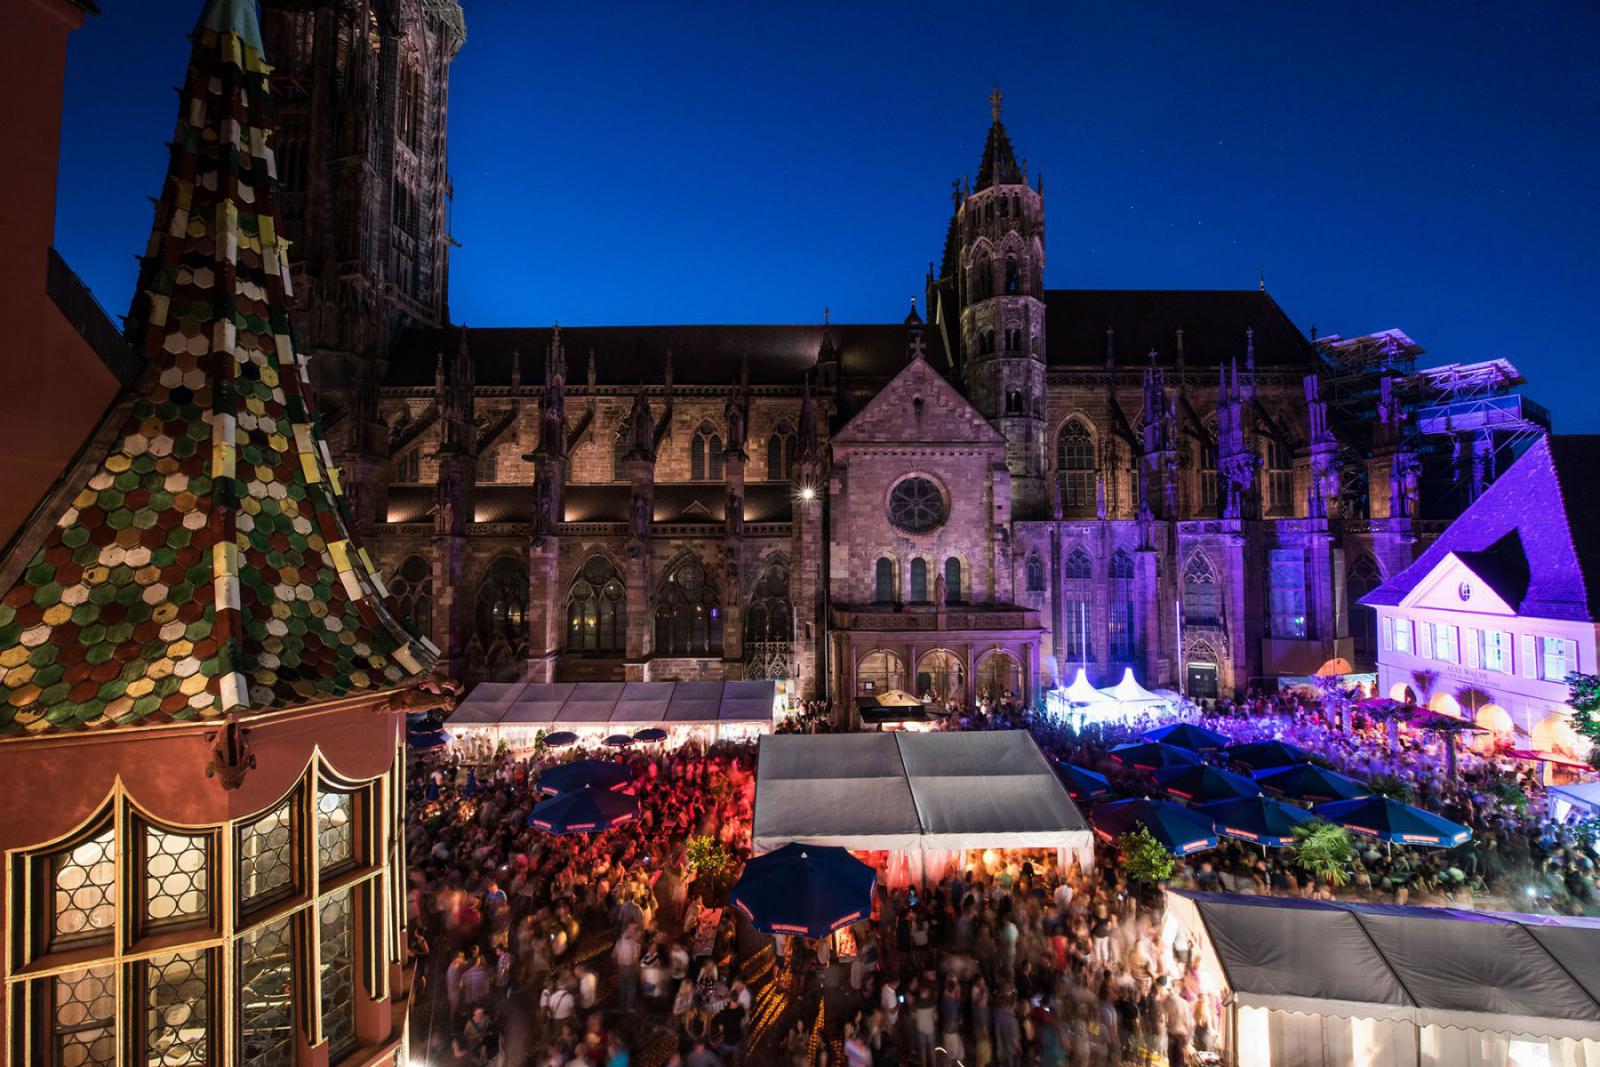 Ontdek de culinaire flair tijdens het Wijnfestival van Freiburg | FWTM / Polkowski